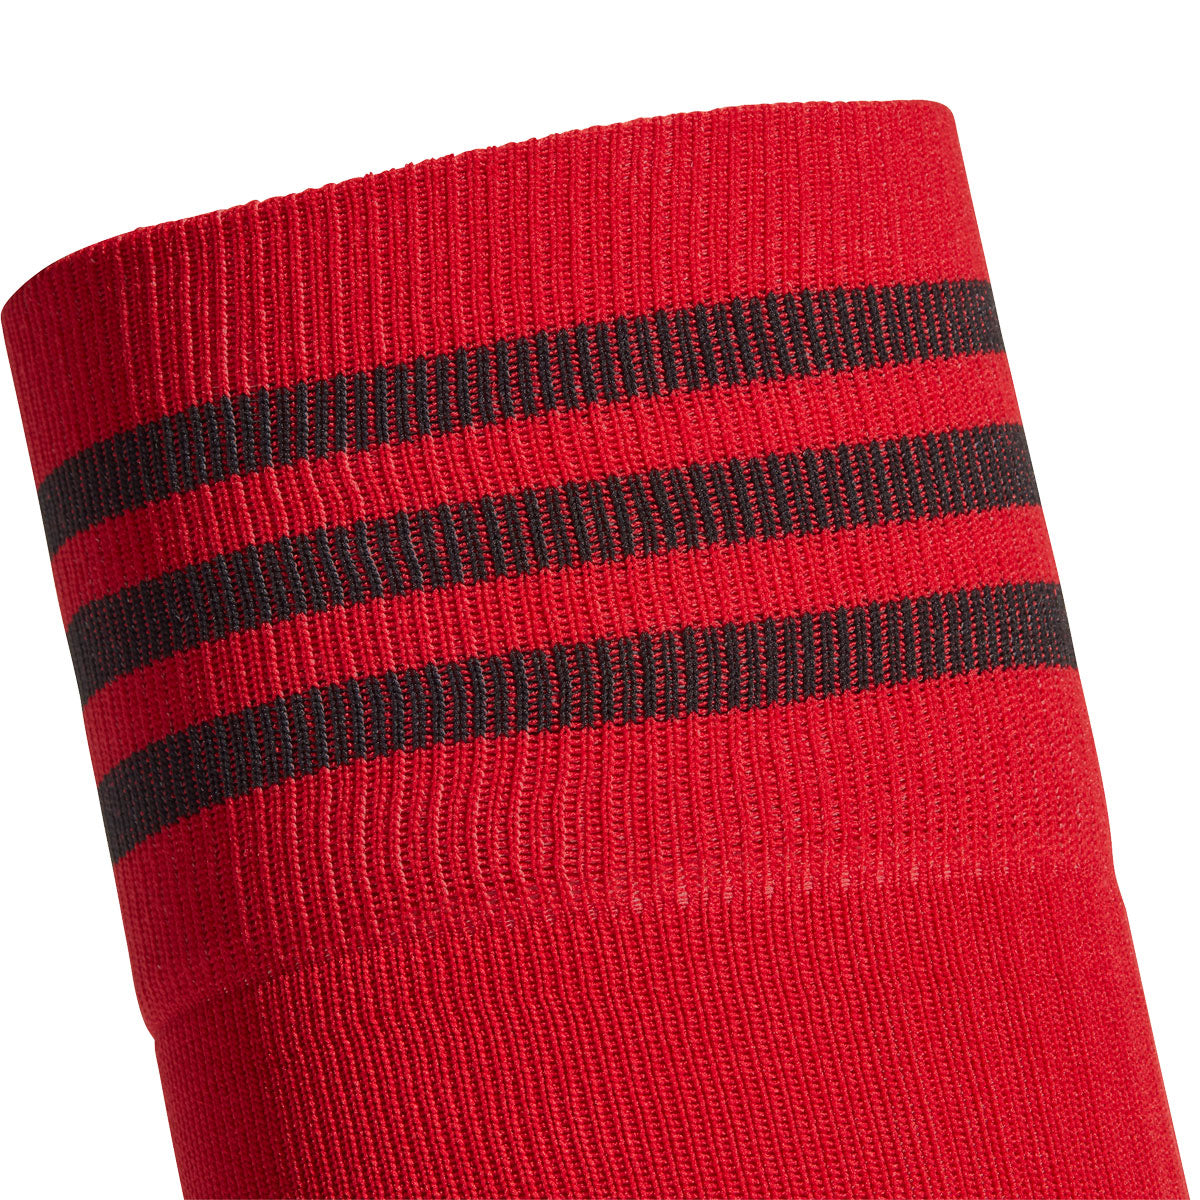 adidas Adi 21 Sock - Adult - Team Power Red/Black